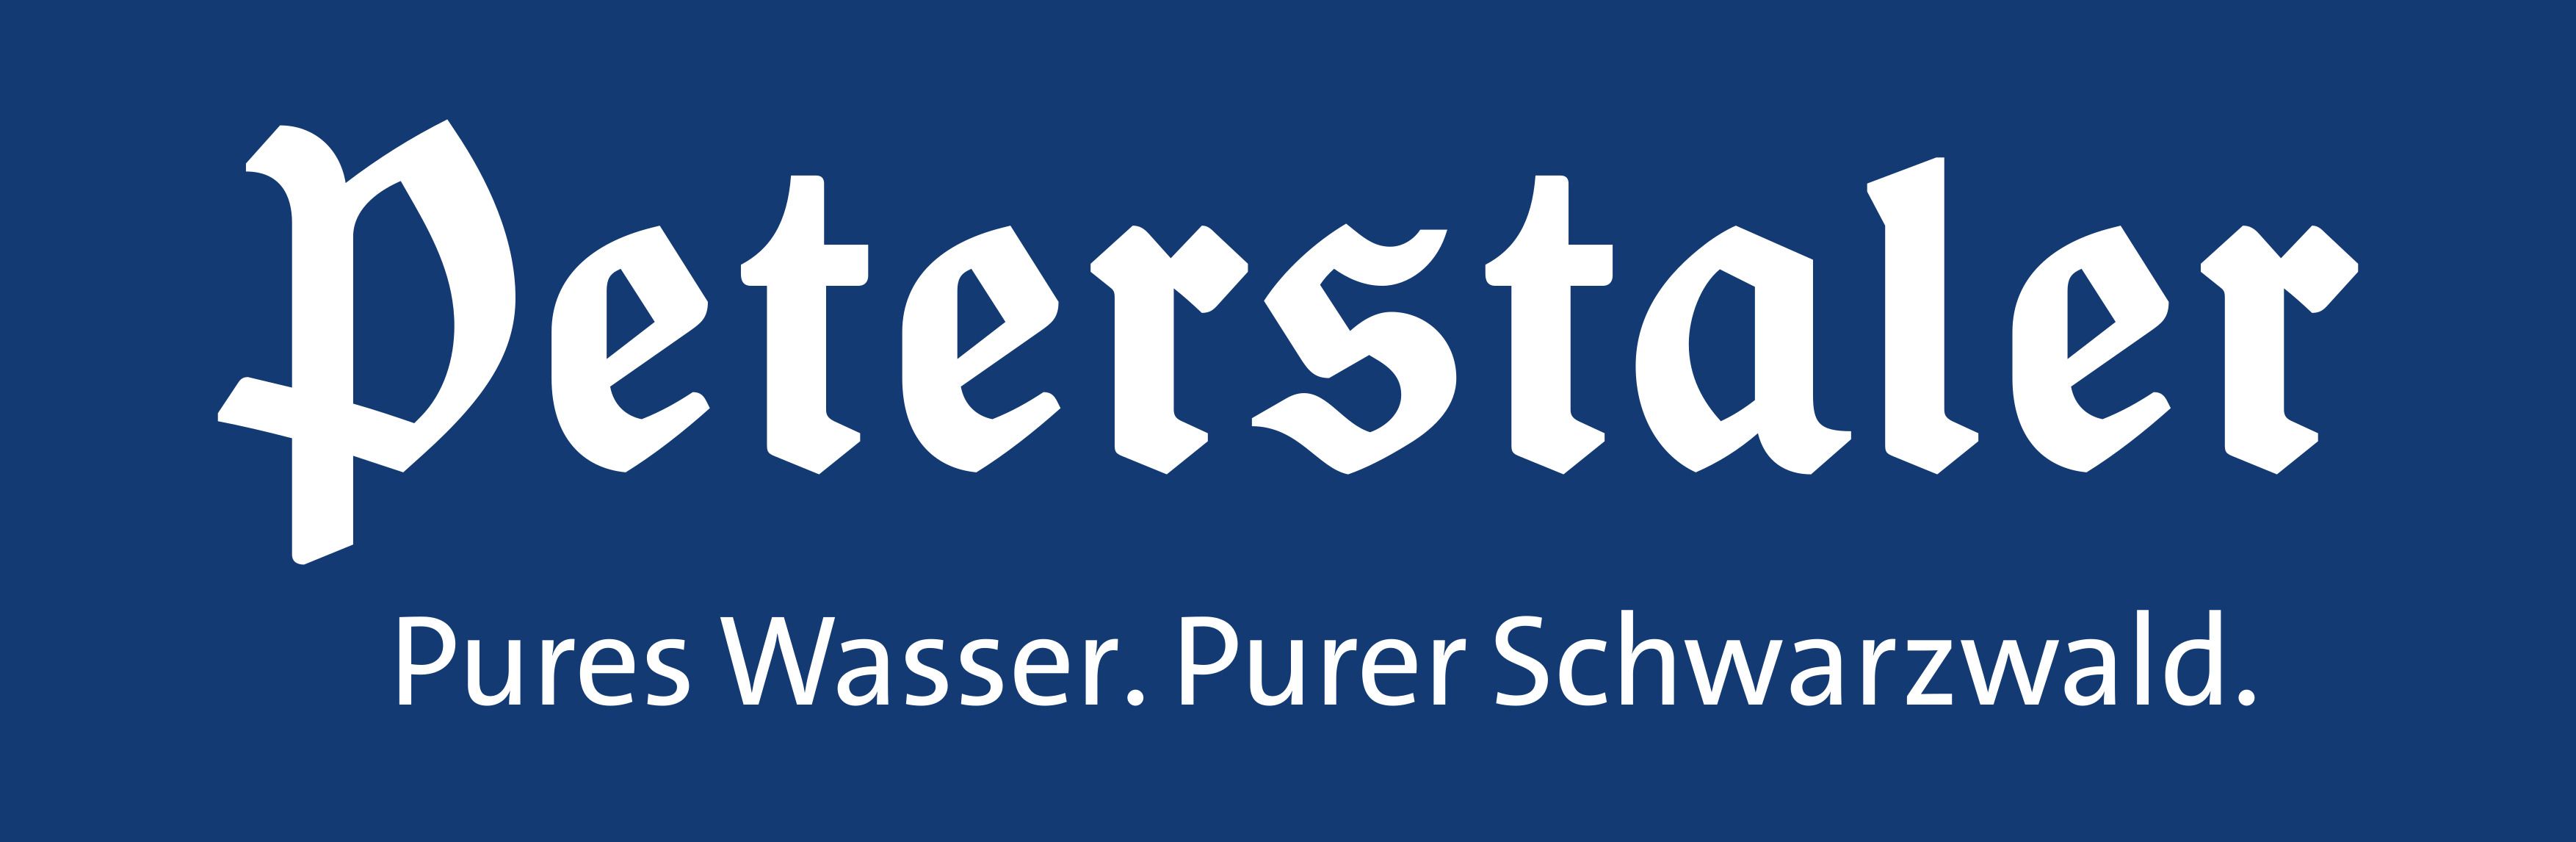 Peterstaler-Logo-PurerSchwarzwald.jpg